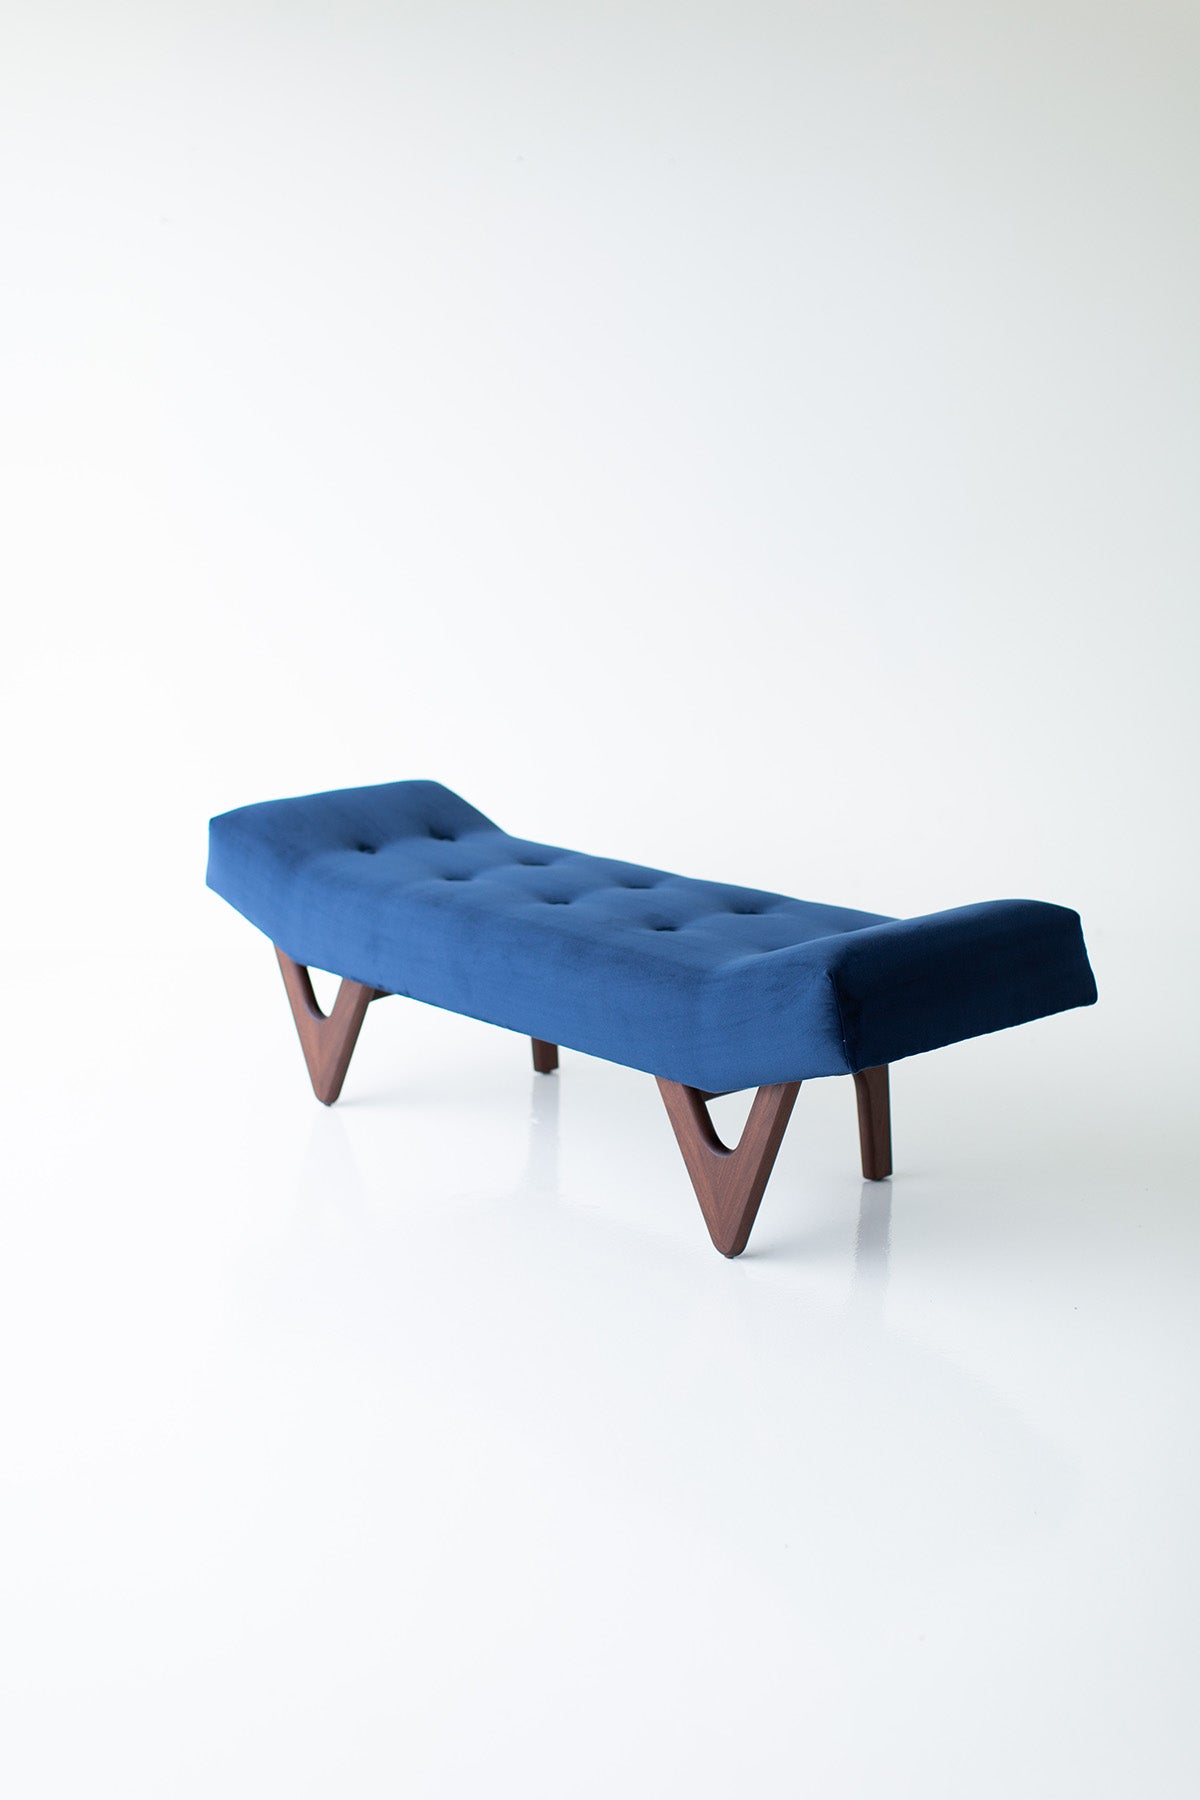 Alaska Modern Bench for Craft Associates - 2402